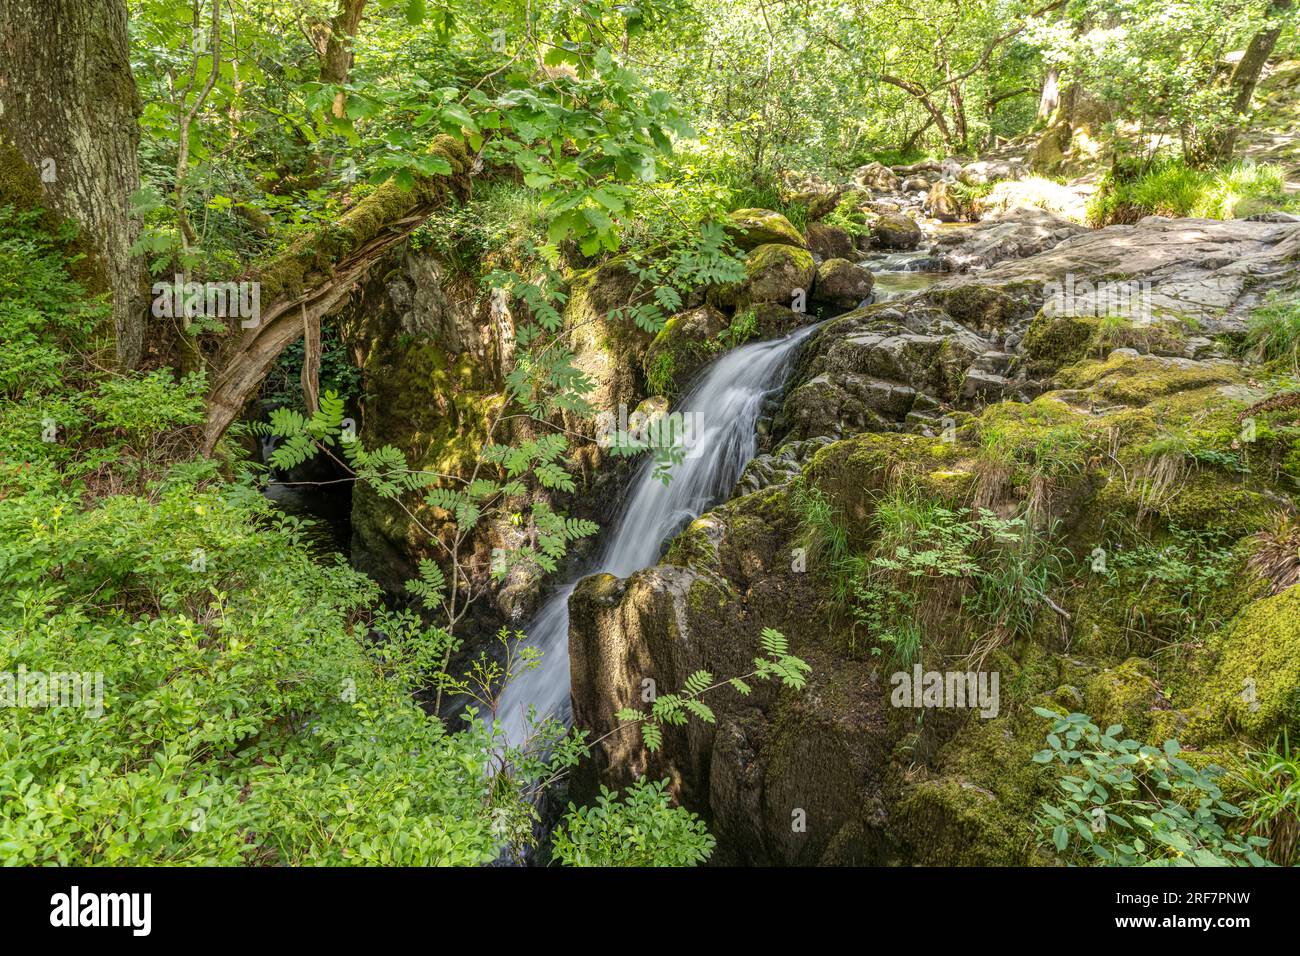 Wasserfall am Fluss Aira Beck im Lake District, England, Großbritannien, Europa | Aira Beck River Waterfall at Lake District, England, United Kingd Foto Stock